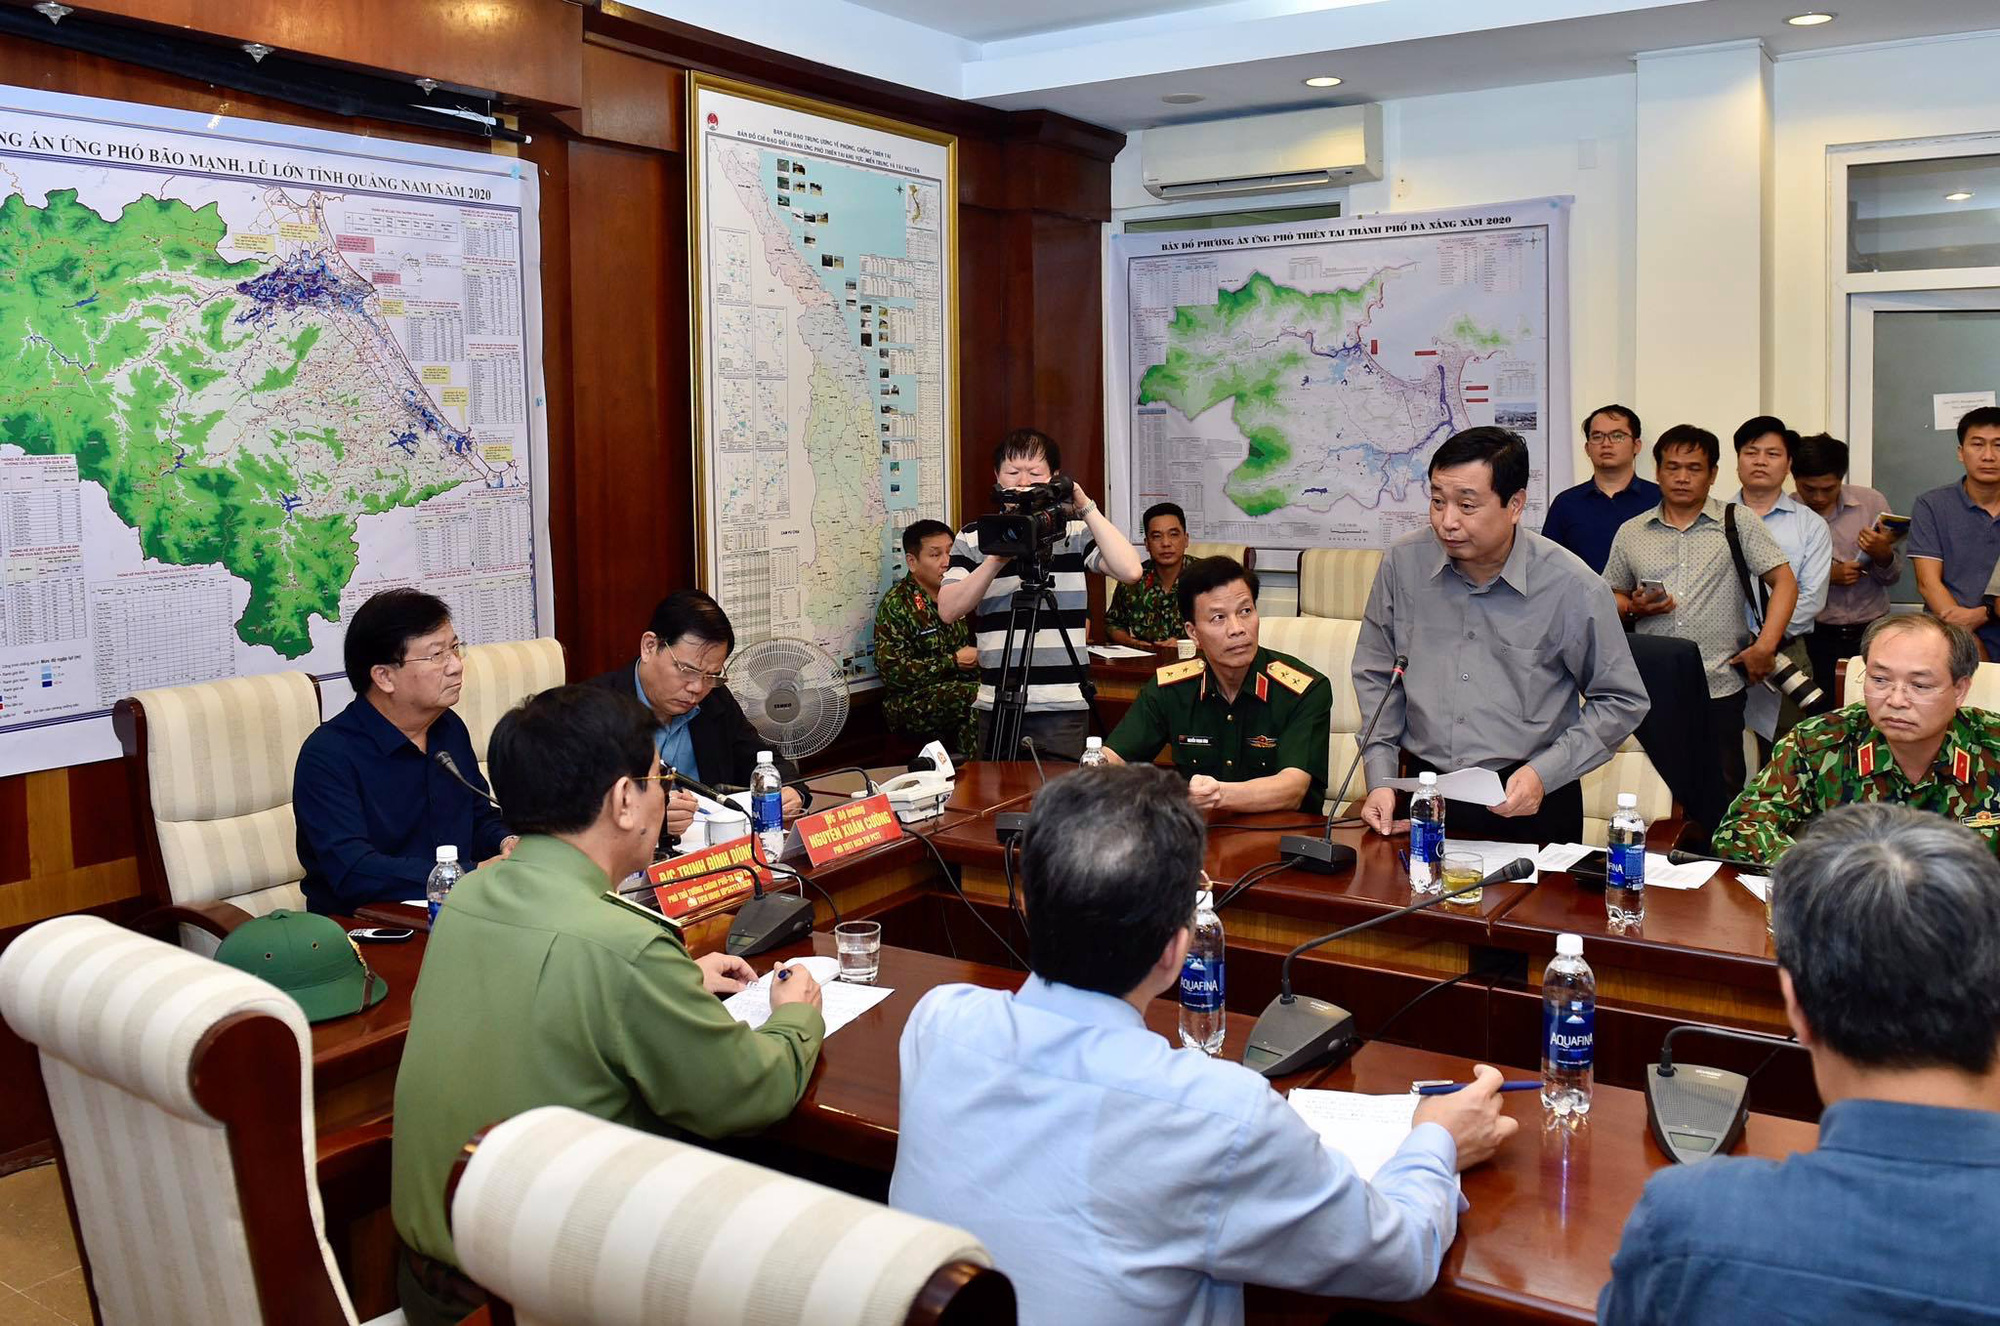 Clip: Thủ tướng Chính phủ Nguyễn Xuân Phúc giữa đêm gọi điện cho Phó thủ tướng Trịnh Đình Dũng chỉ để hỏi 1 câu - Ảnh 3.